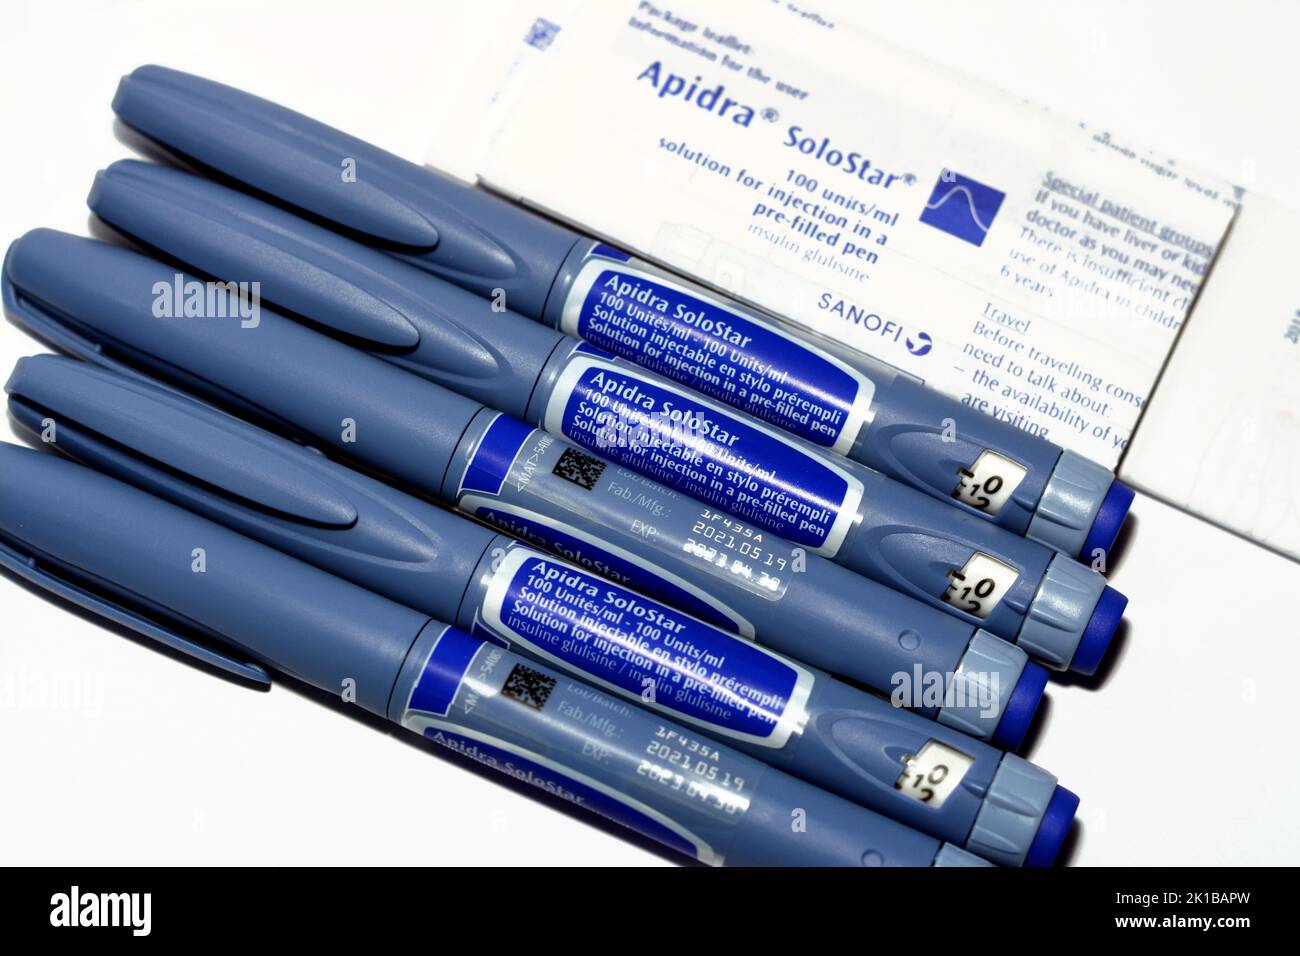 Le Caire, Egypte, 3 septembre 2022: Apidra SoloSTAR solution stylo  prérempli insuline glulisine à action courte pour injection sous-cutanée en  insuline-dépendante Photo Stock - Alamy